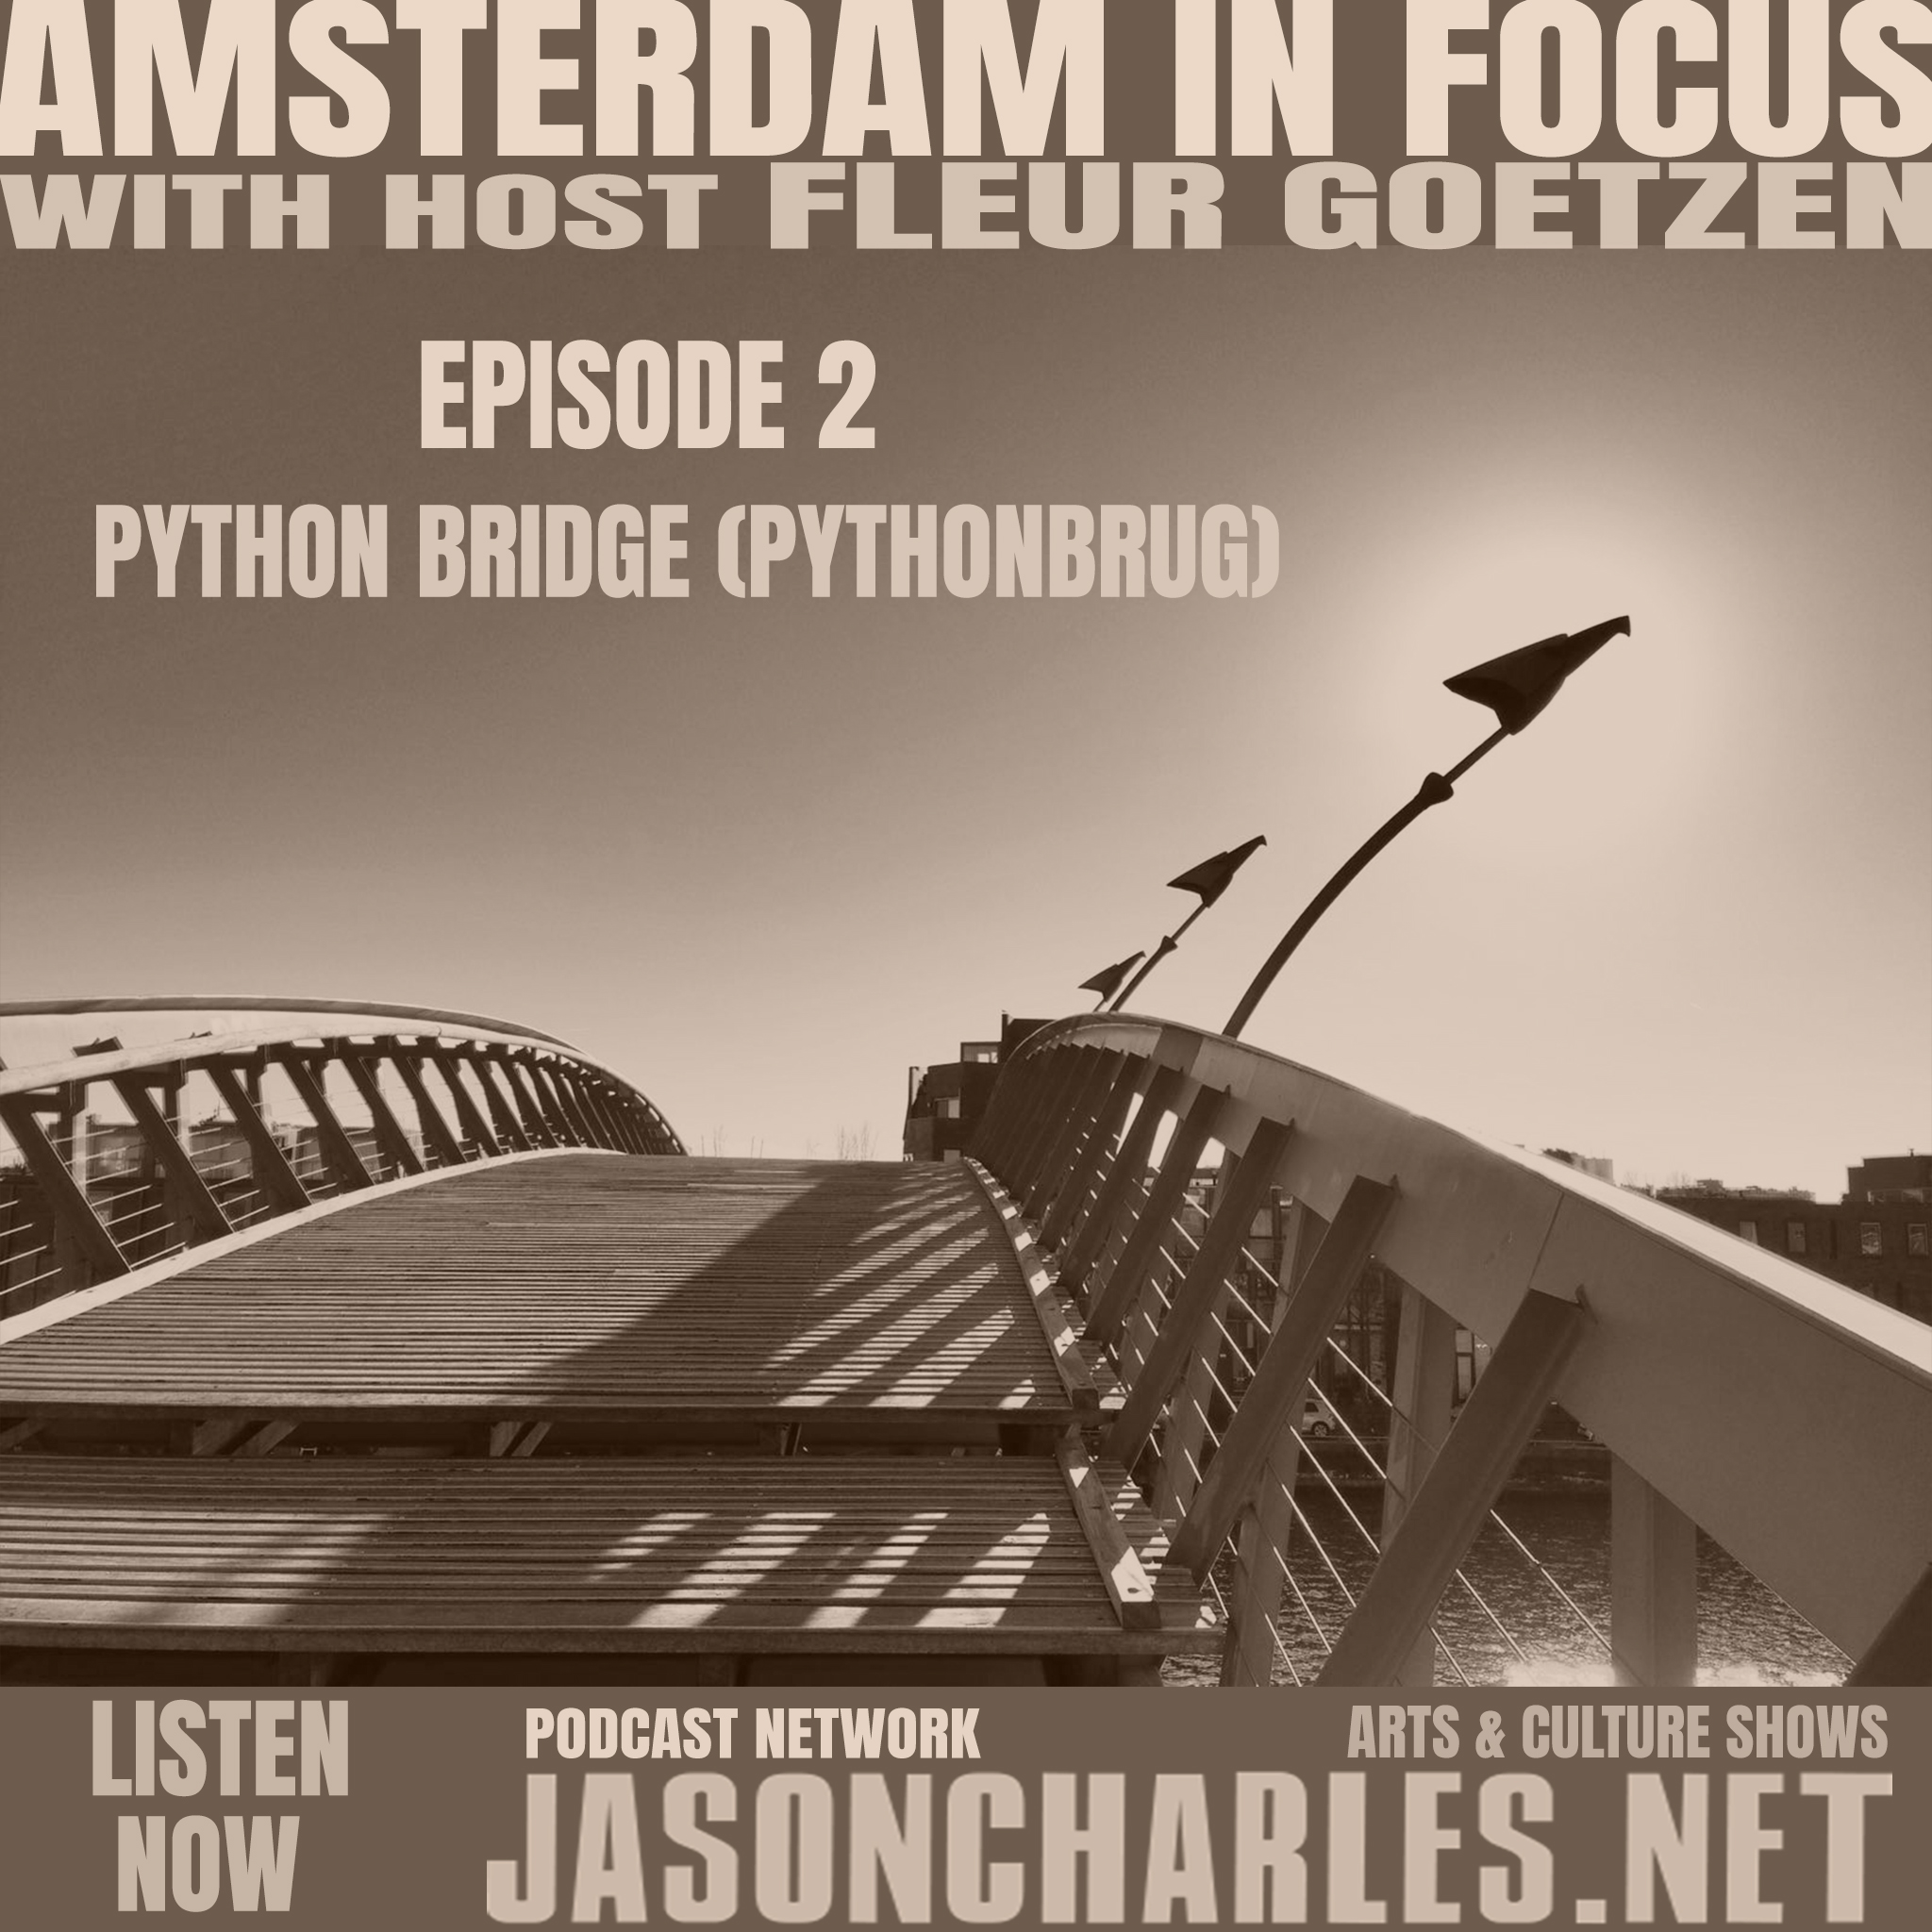 AMSTERDAM IN FOCUS Episode 2 Python Bridge (Pythonbrug)